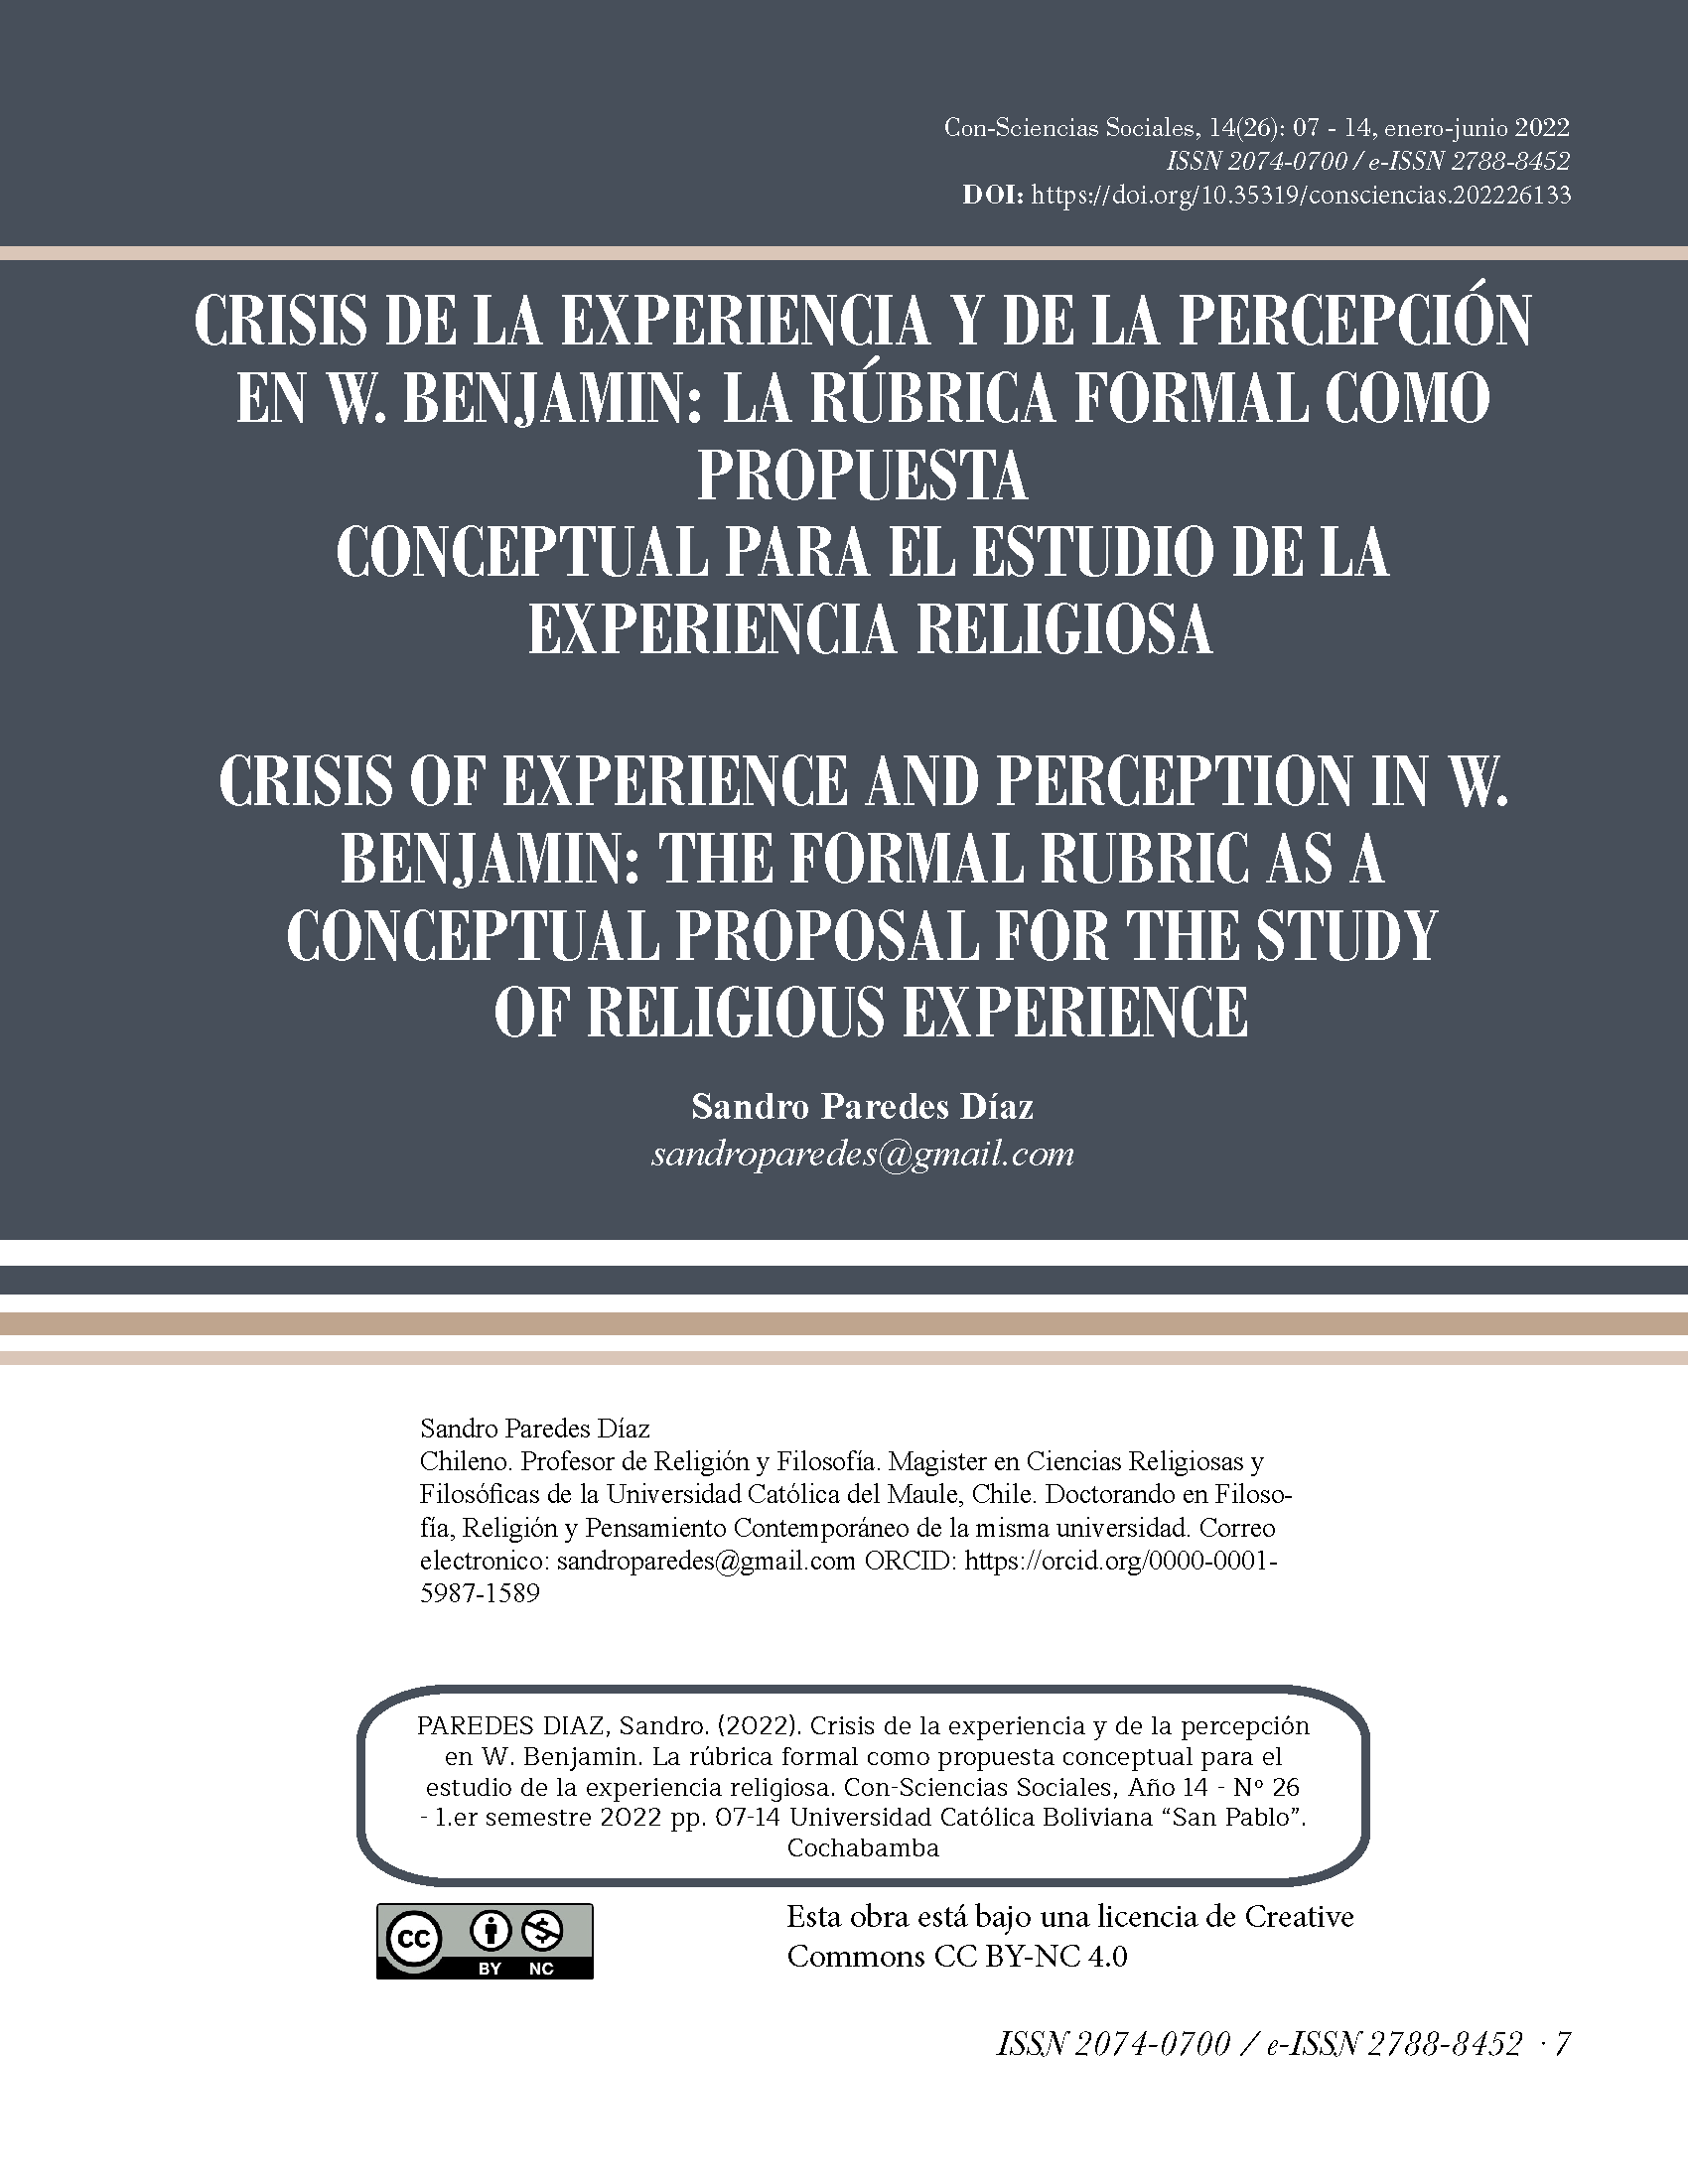 Crisis de la experiencia y de la percepción en W. Benjamin: la rúbrica formal como propuesta conceptual para el estudio de la experiencia religiosa 